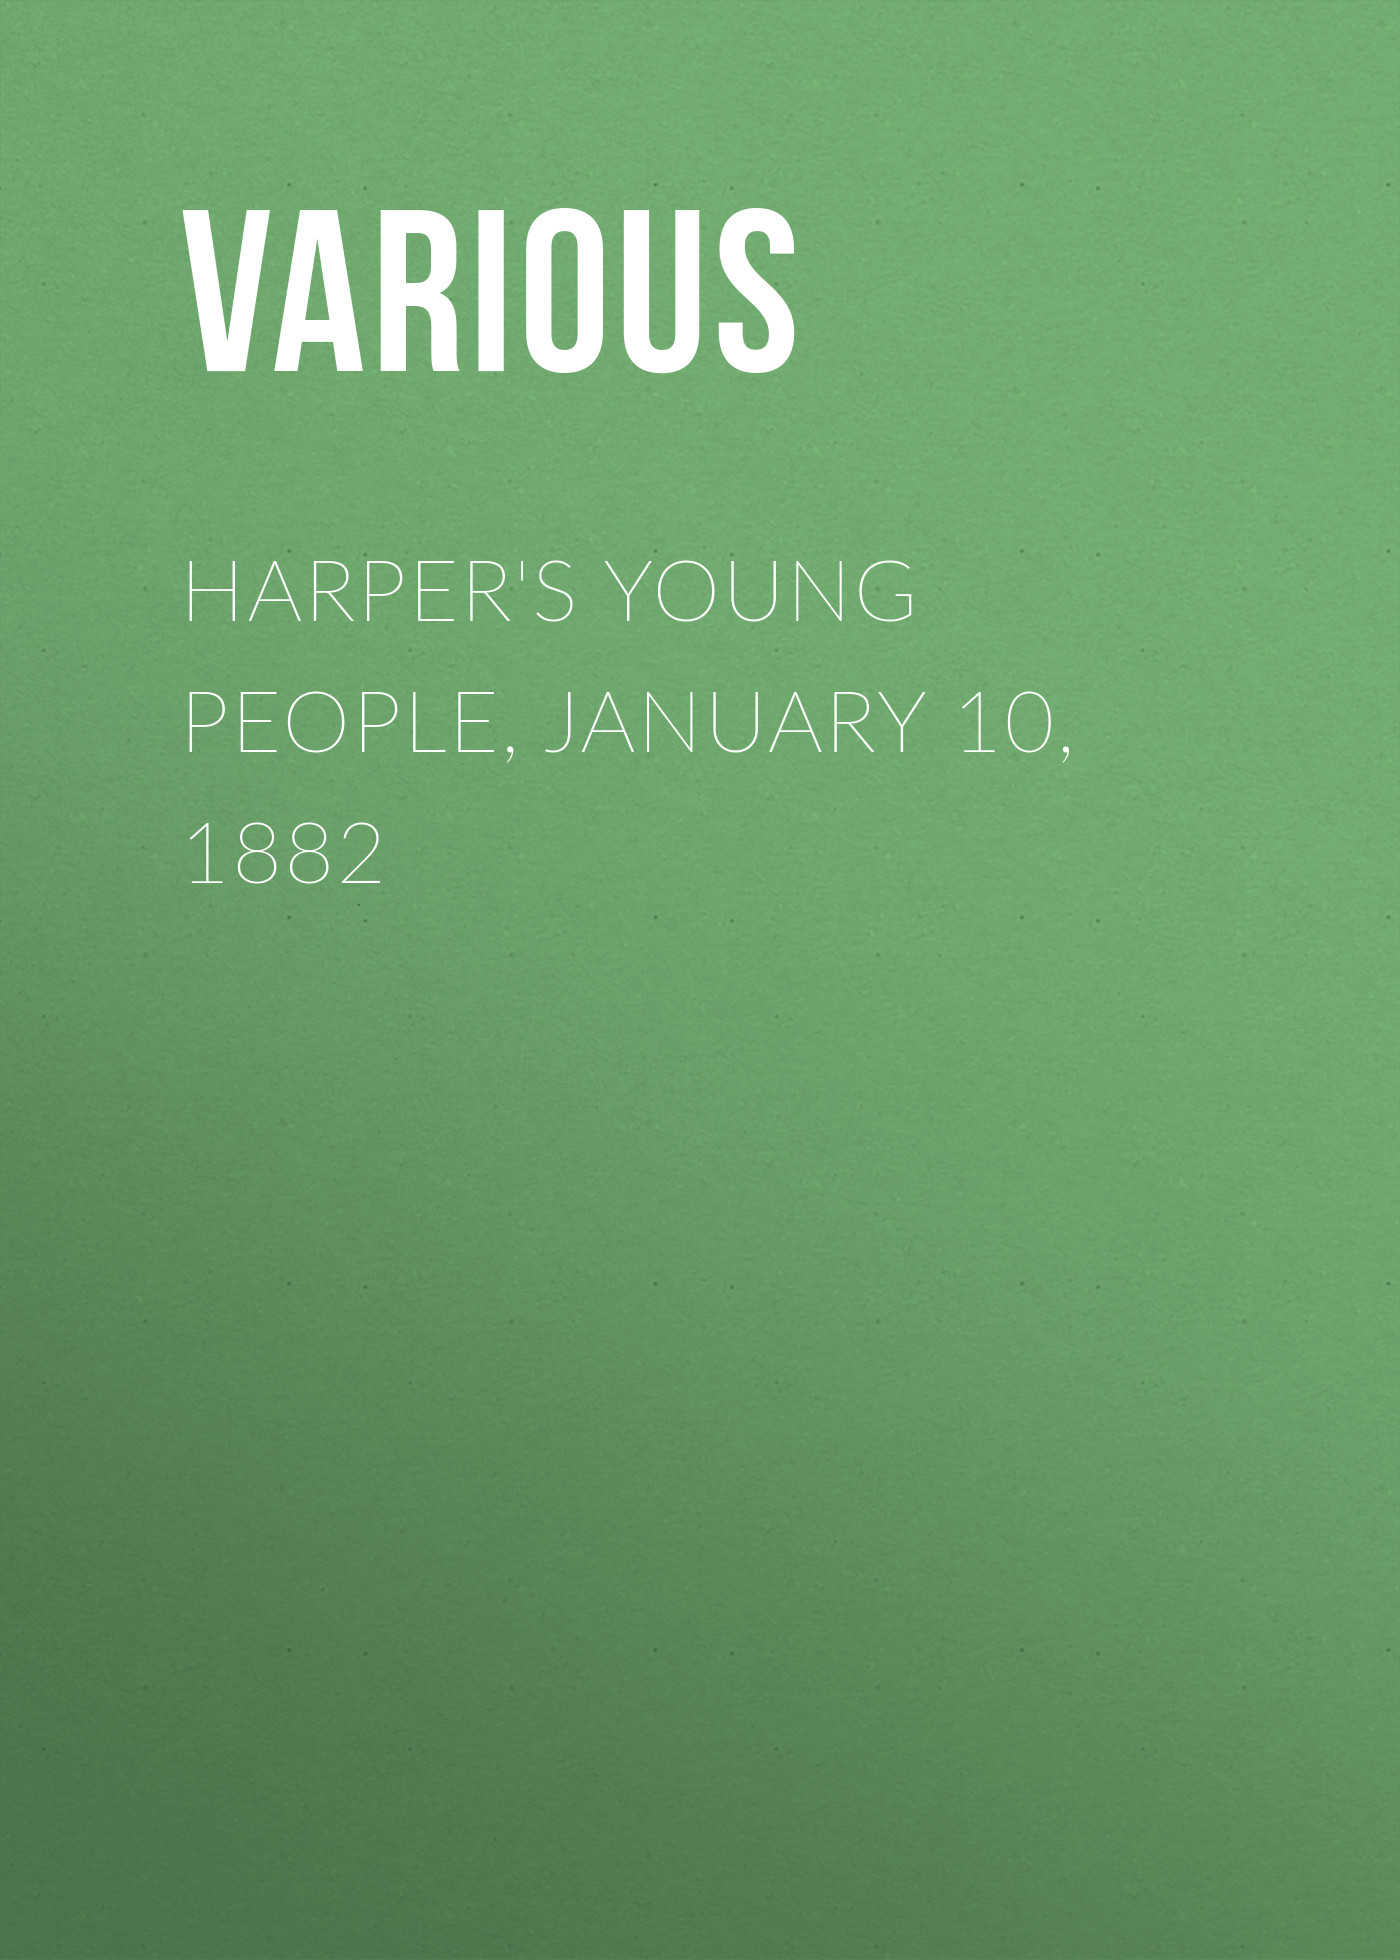 Книга Harper's Young People, January 10, 1882 из серии , созданная  Various, может относится к жанру Журналы, Зарубежная образовательная литература. Стоимость электронной книги Harper's Young People, January 10, 1882 с идентификатором 25716370 составляет 0 руб.